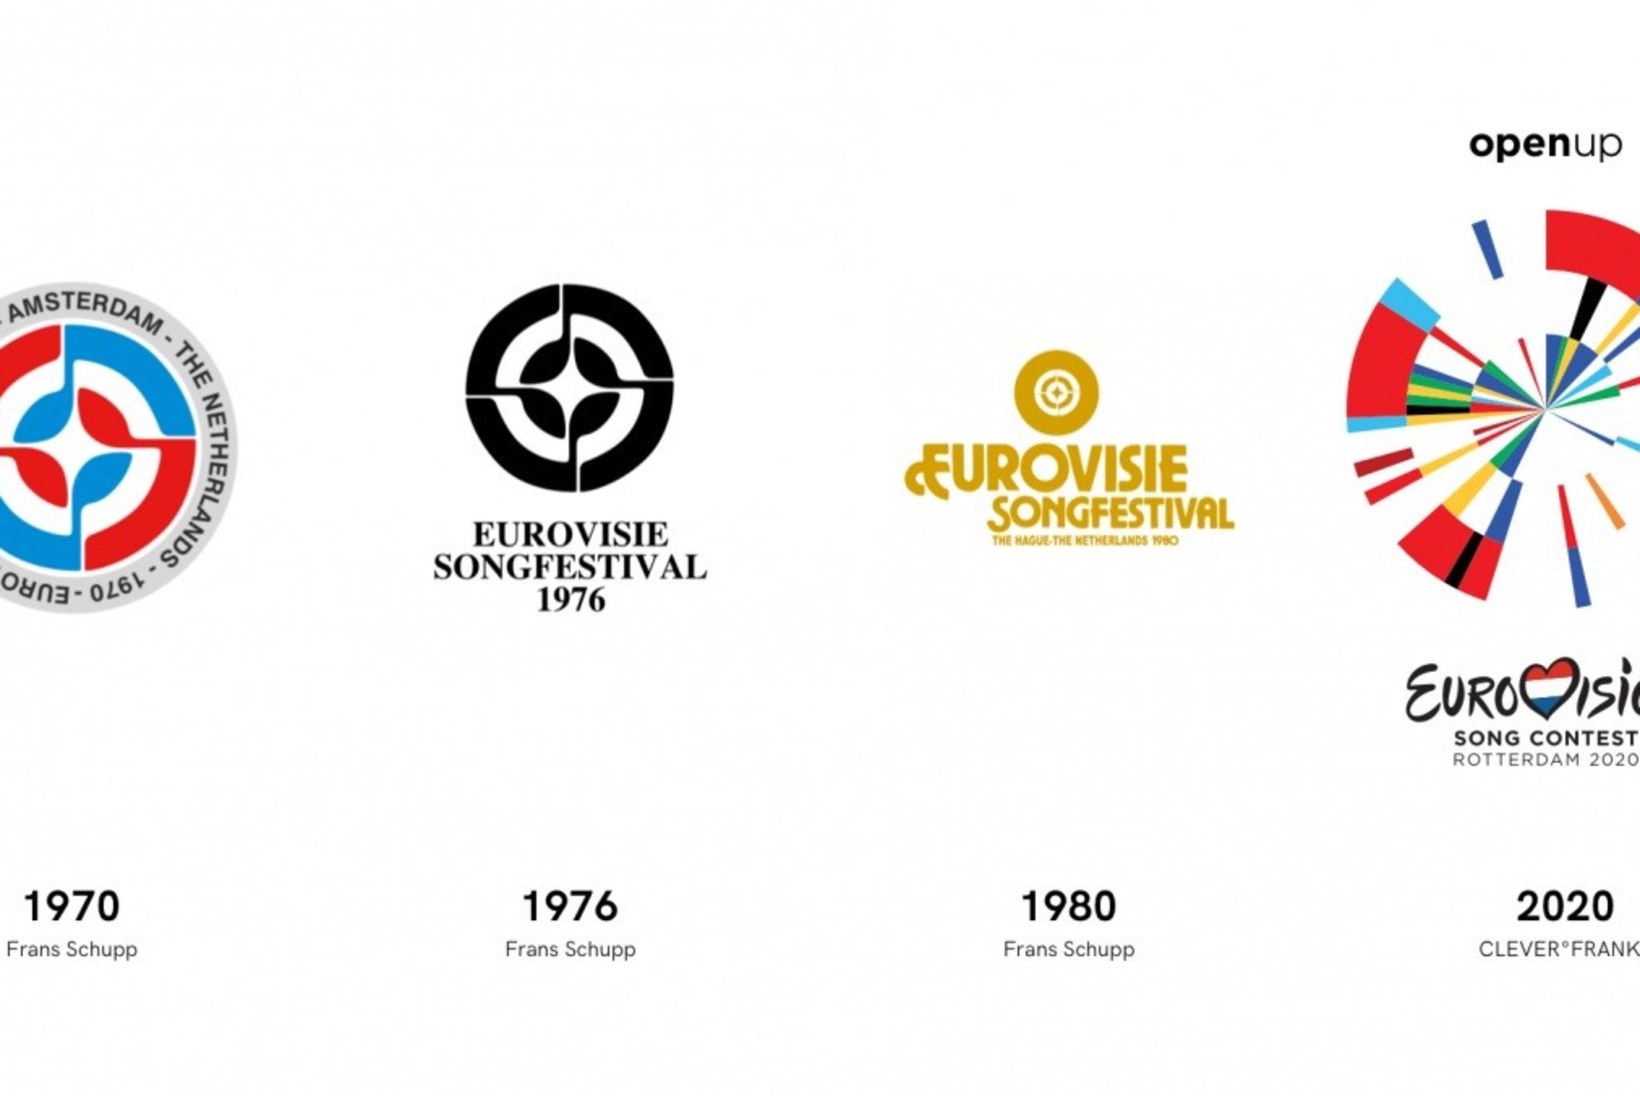 Eurovisioni logo ühendab endas kõigi osalevate riikide lipud